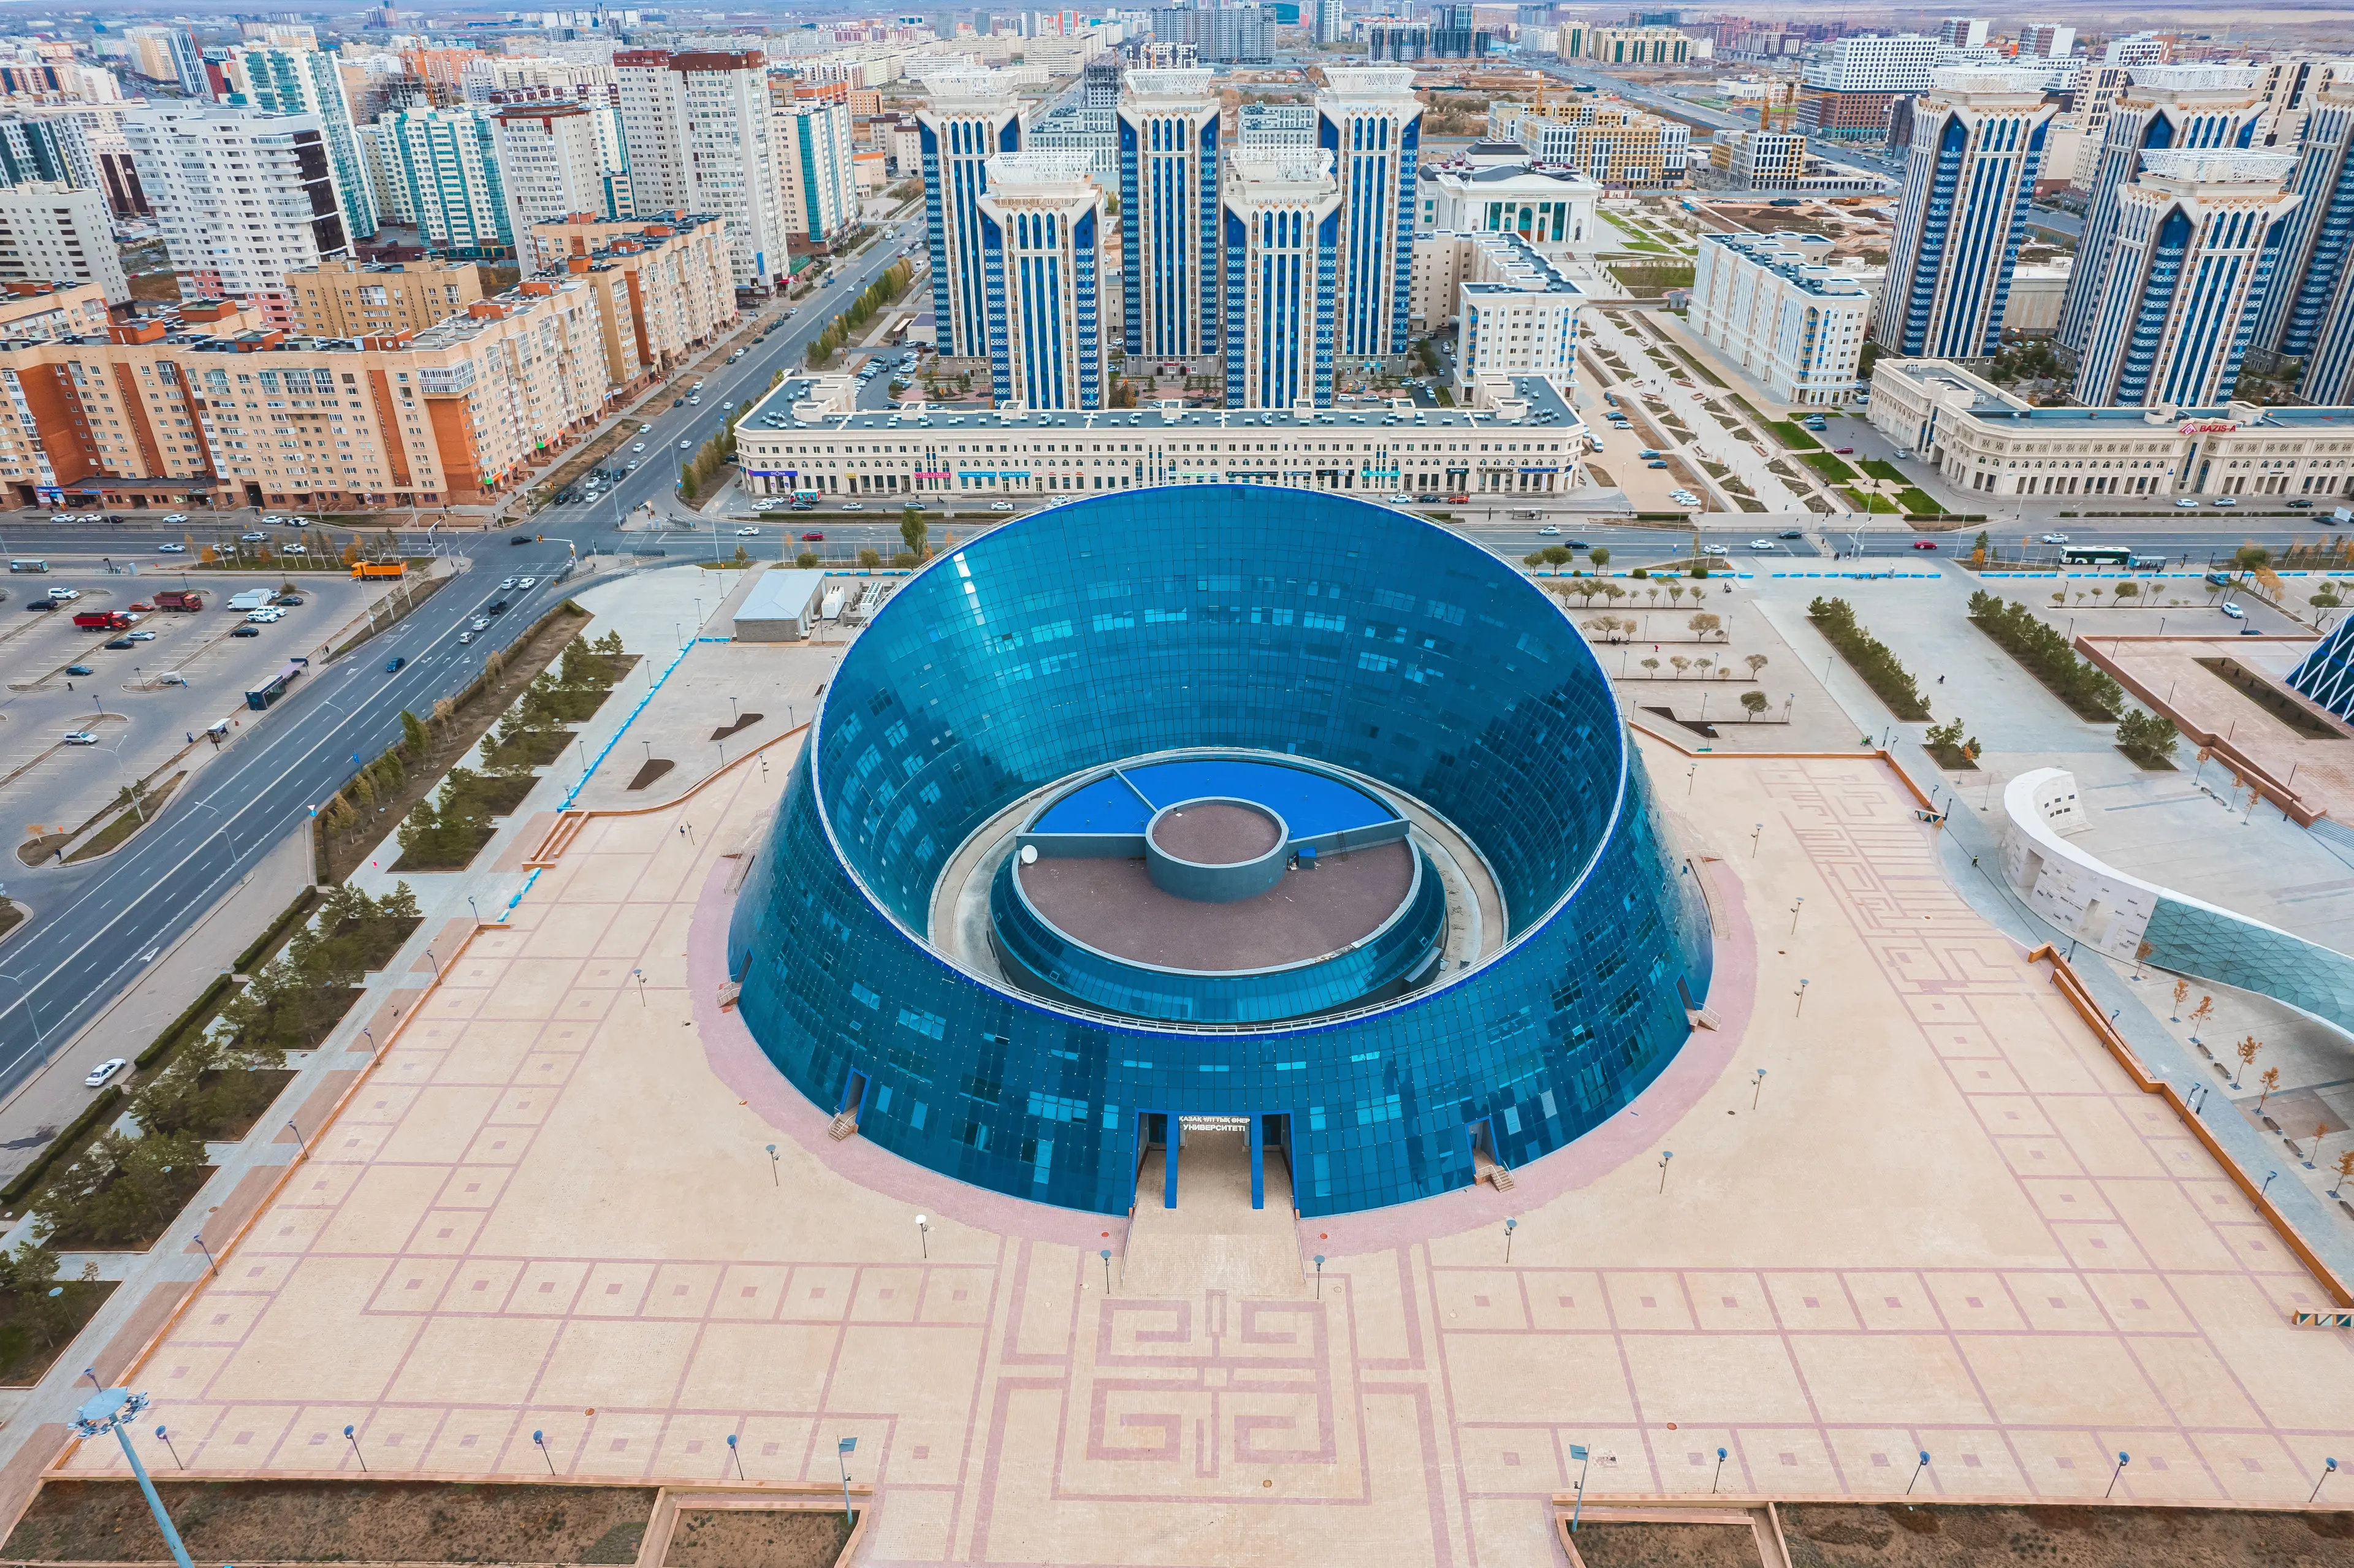 2-Day Solo Food, Wine & Outdoor Activities in Astana, Kazakhstan